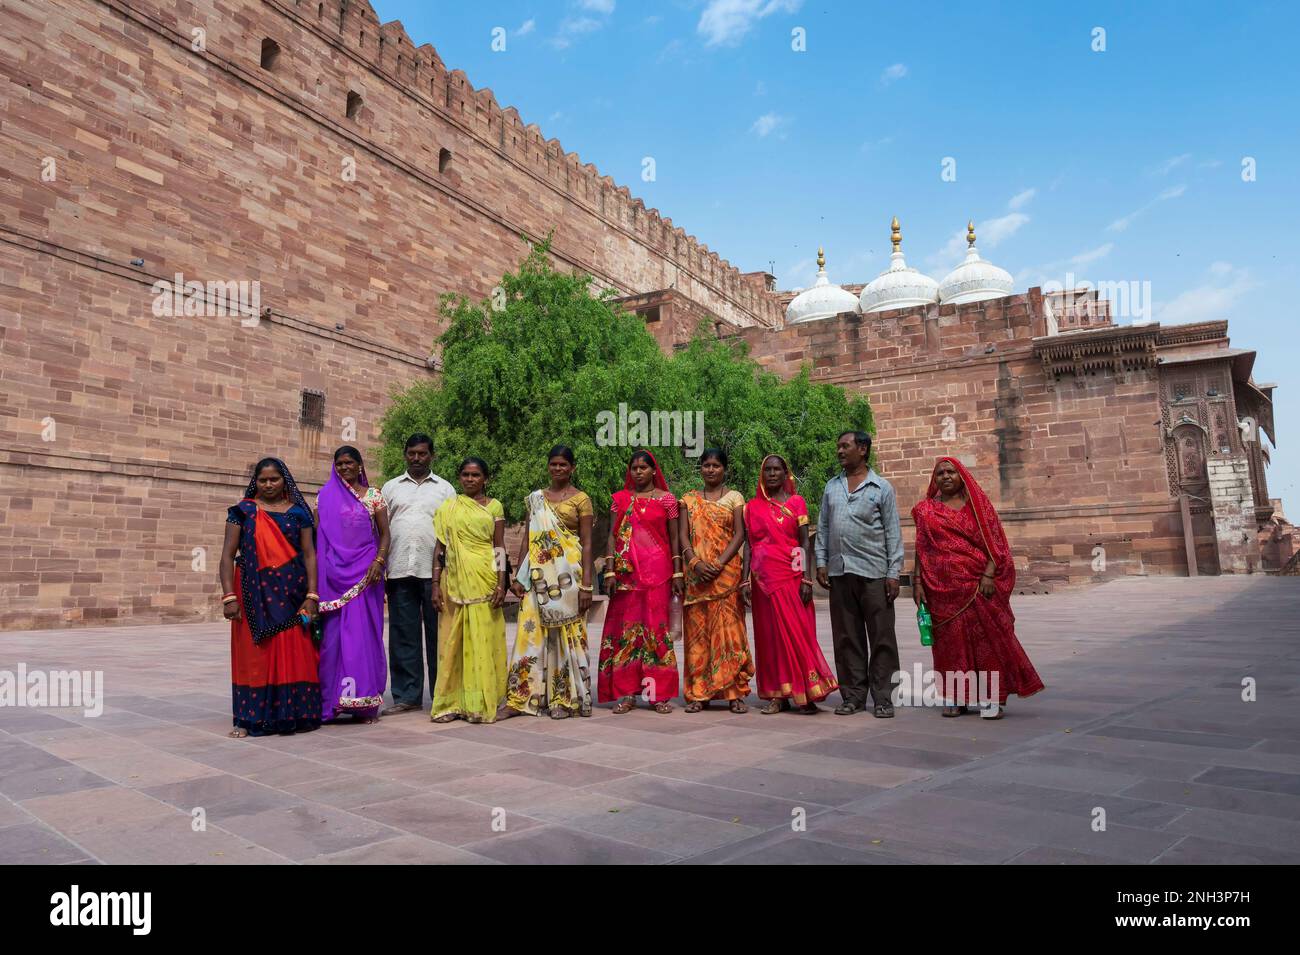 Jodhpur, Rajasthan, Inde - 19 octobre 2019 : des femmes du Rajasthan portant des sarees indiens colorés visitant le fort de Mehrangarh. Site du patrimoine mondial de l'UNESCO. Banque D'Images